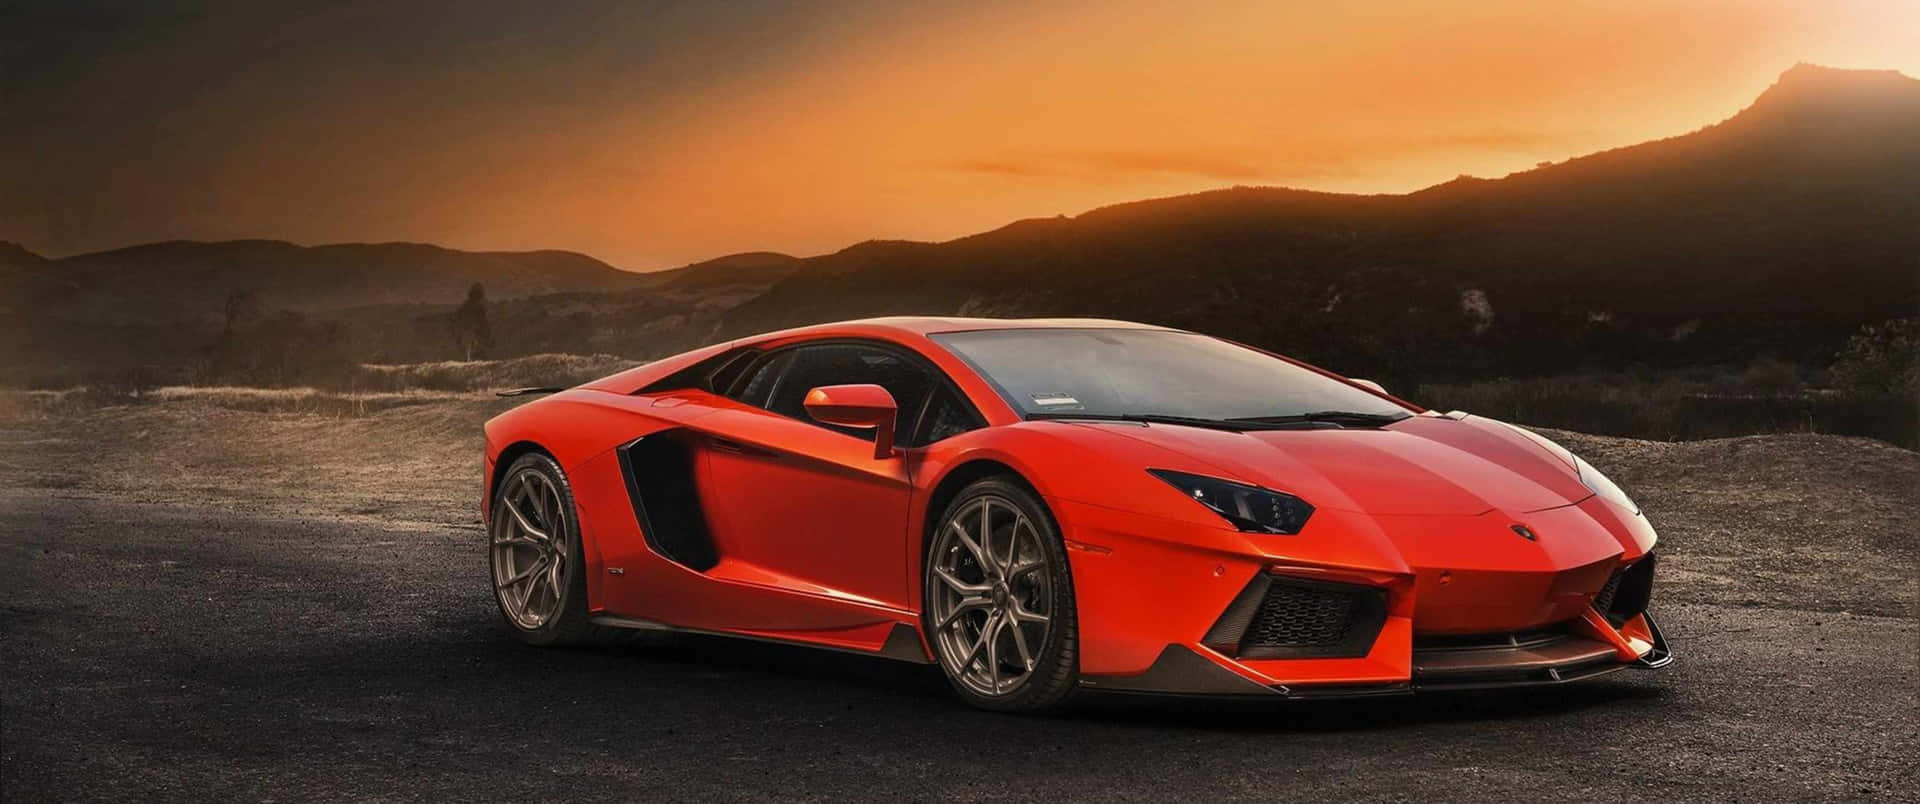 Spüredie Geschwindigkeit: Lamborghini Mit 3440x1440p